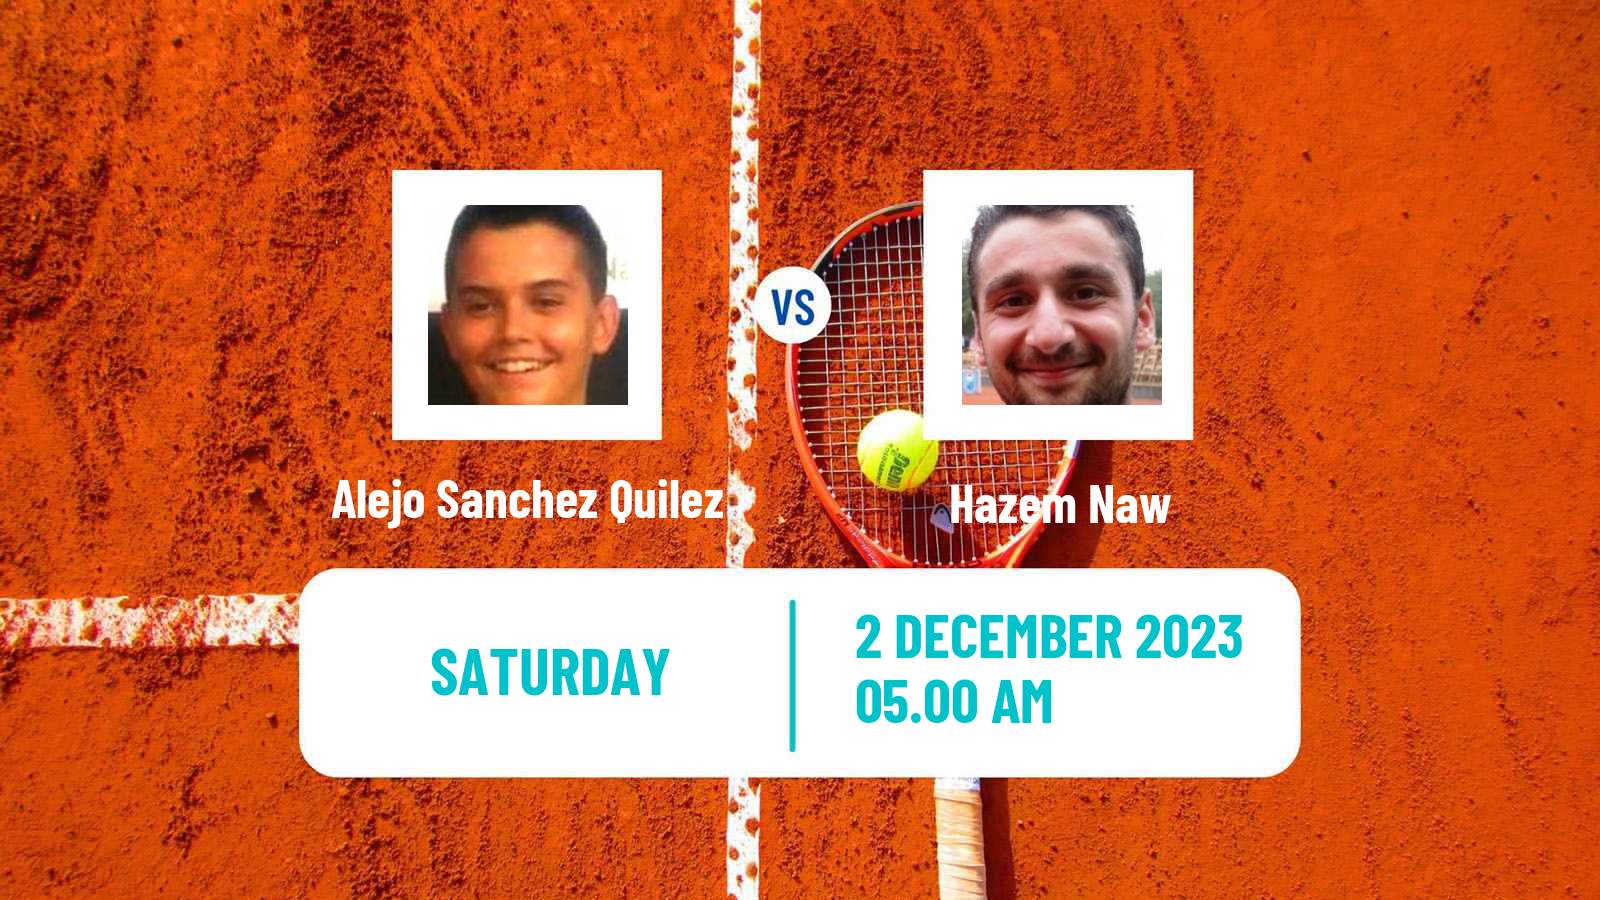 Tennis ITF M15 Madrid 2 Men Alejo Sanchez Quilez - Hazem Naw